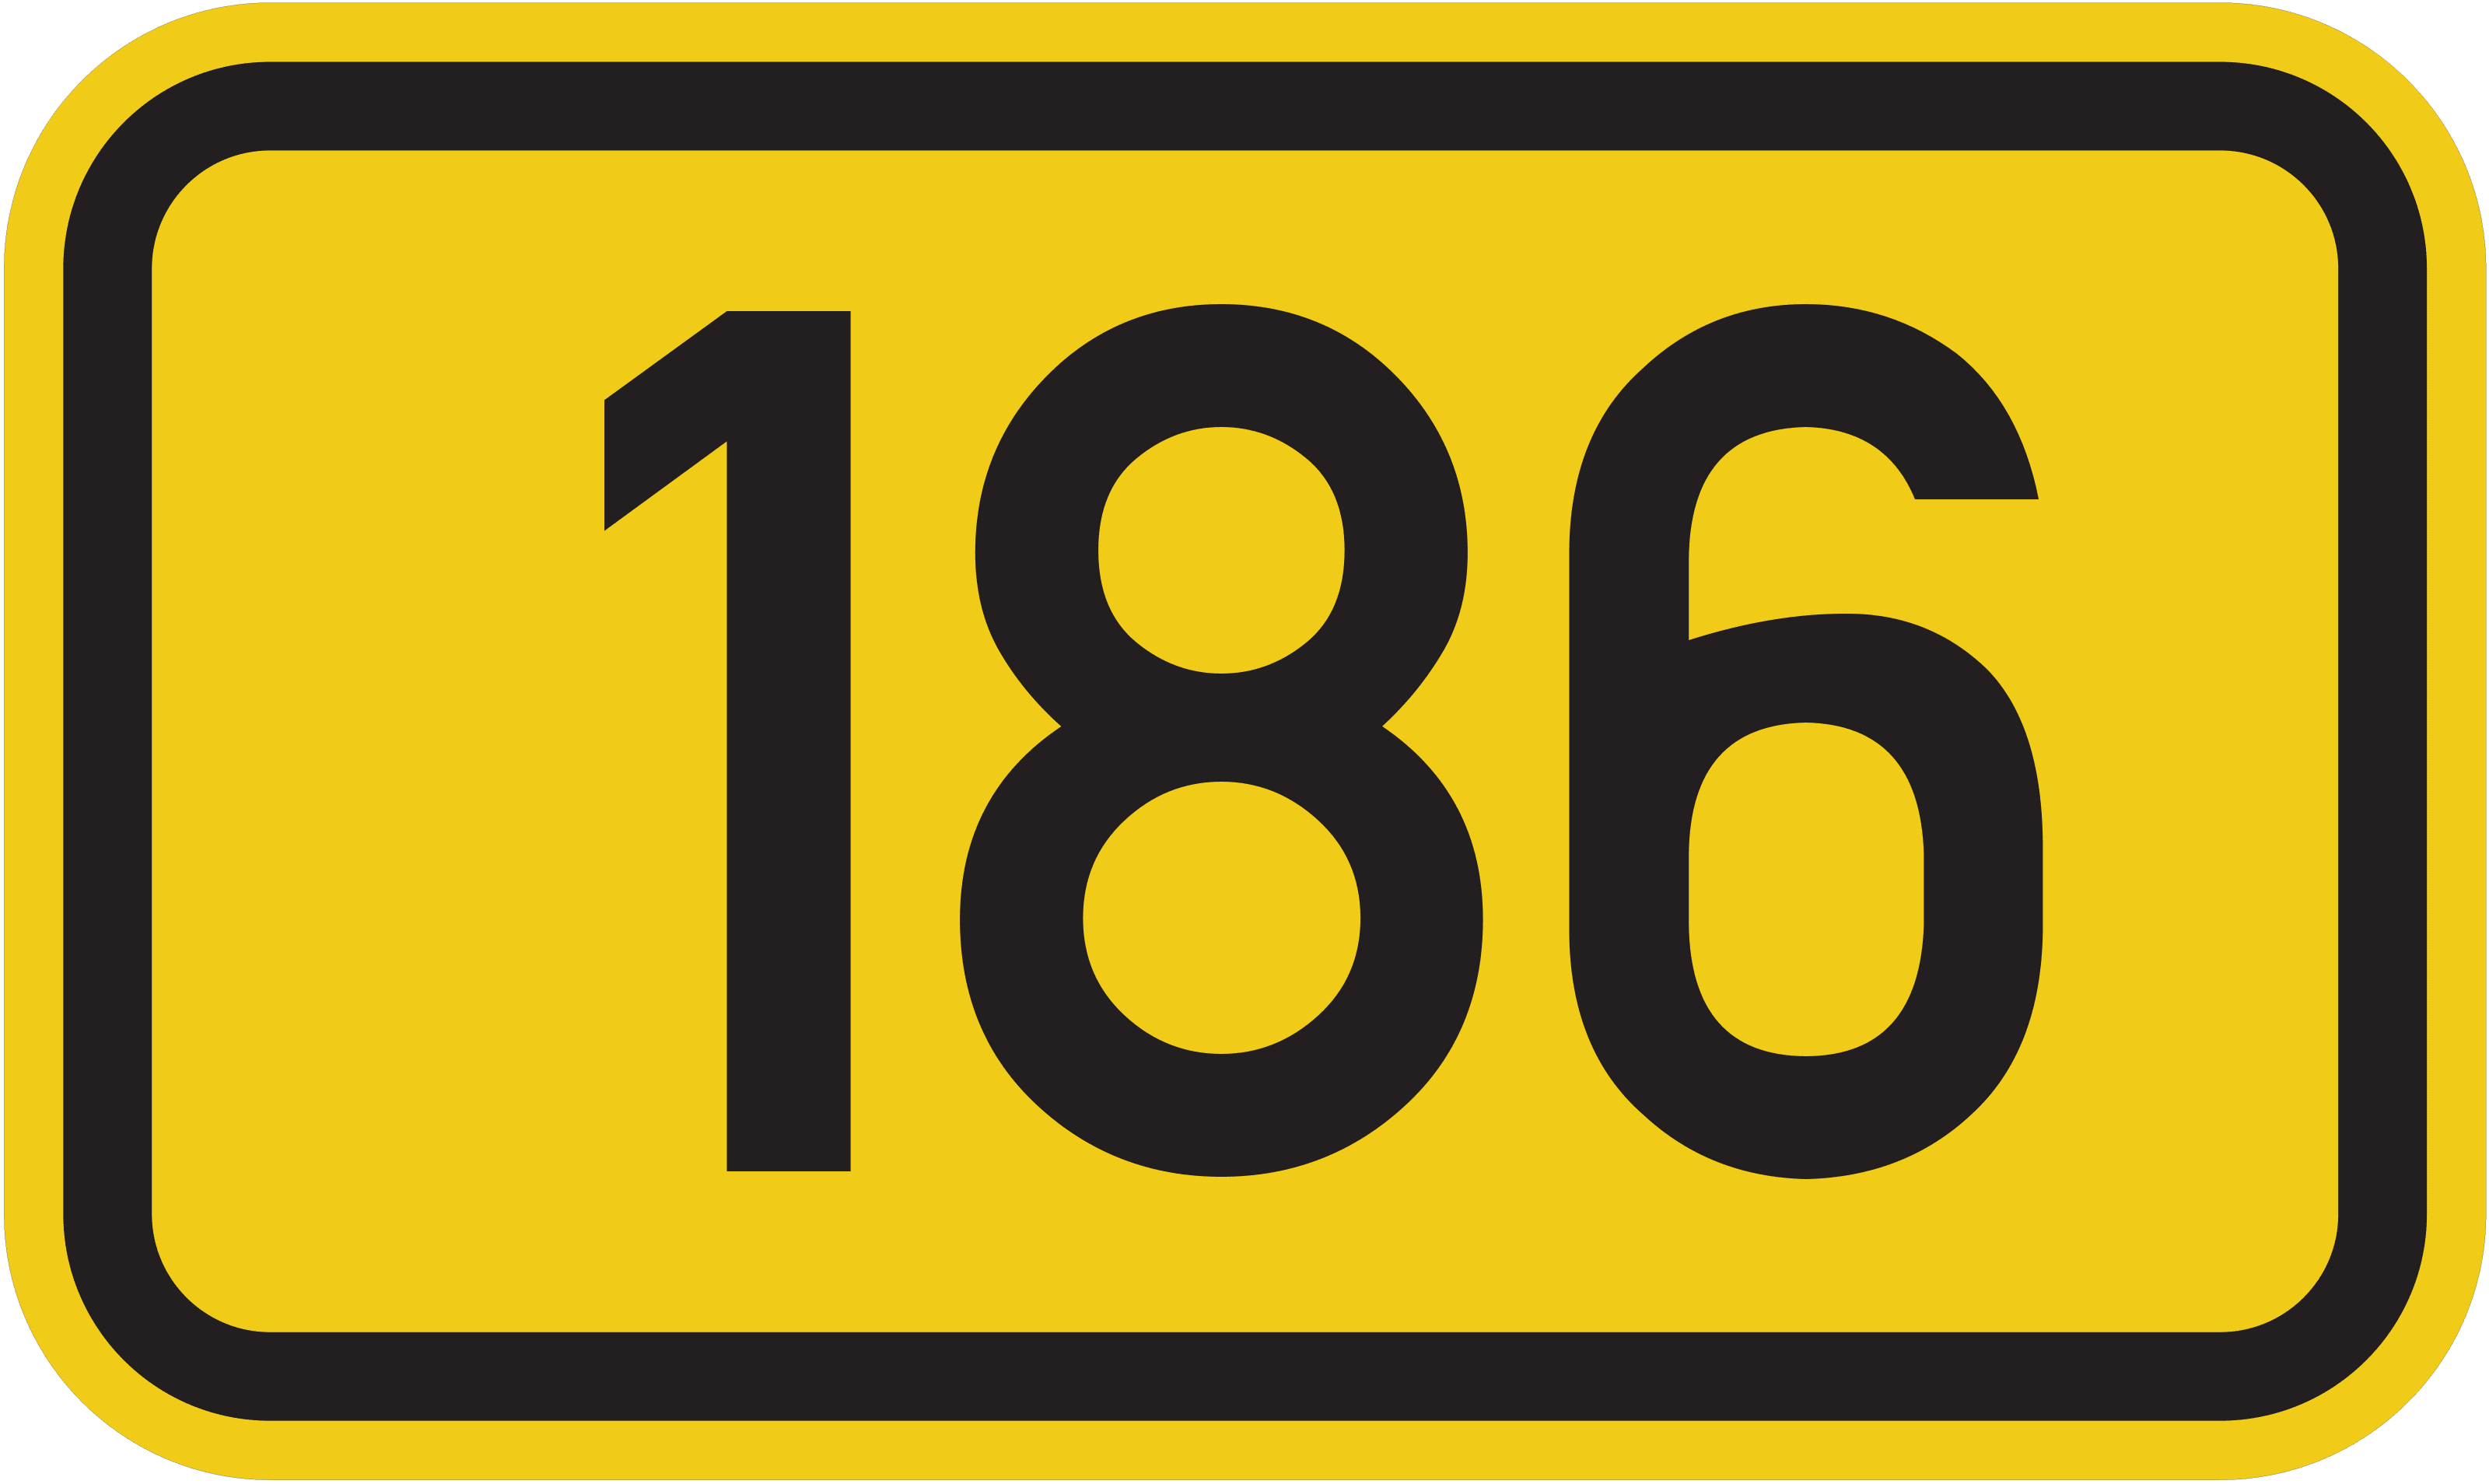 Bundesstraße B 186